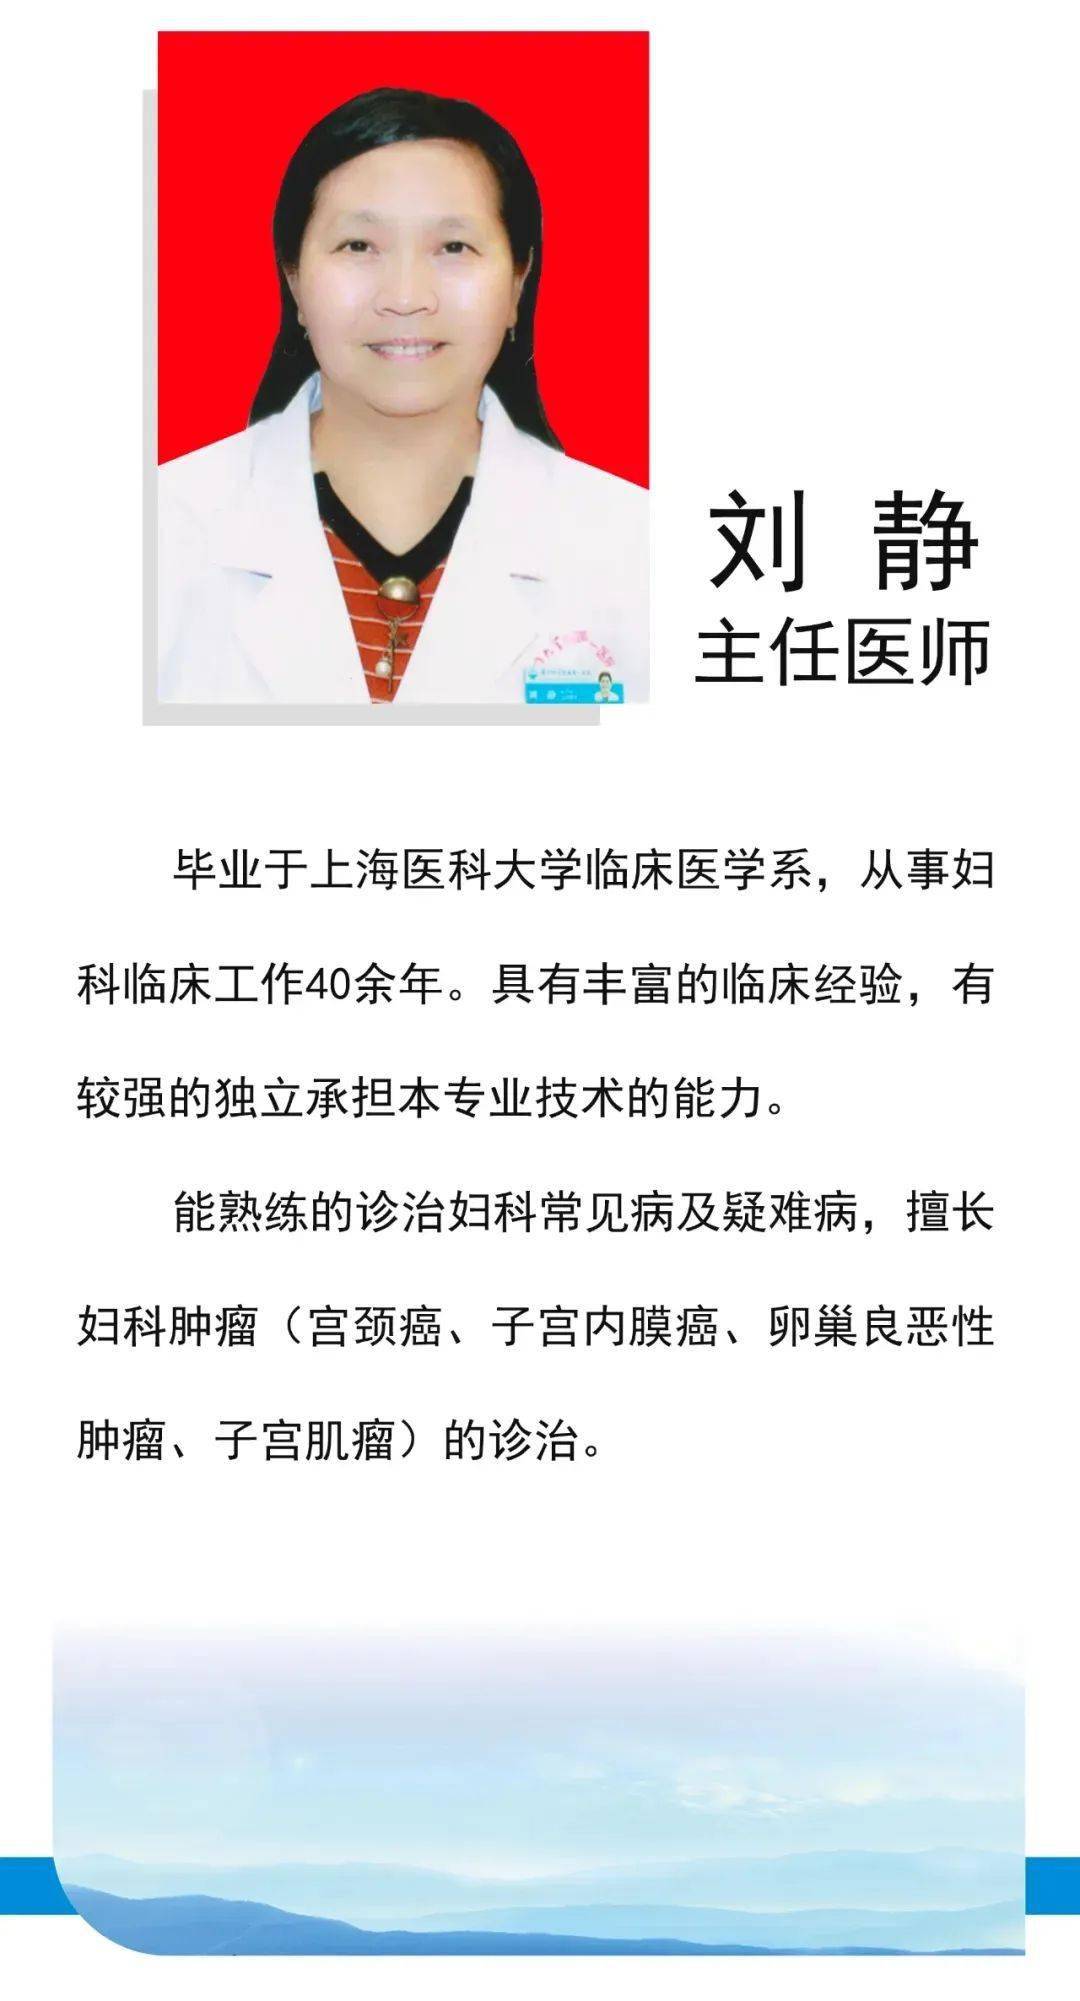 一医院陈琼华名医工作室9月3日由厦门第一医院妇产科刘静主任医师出诊